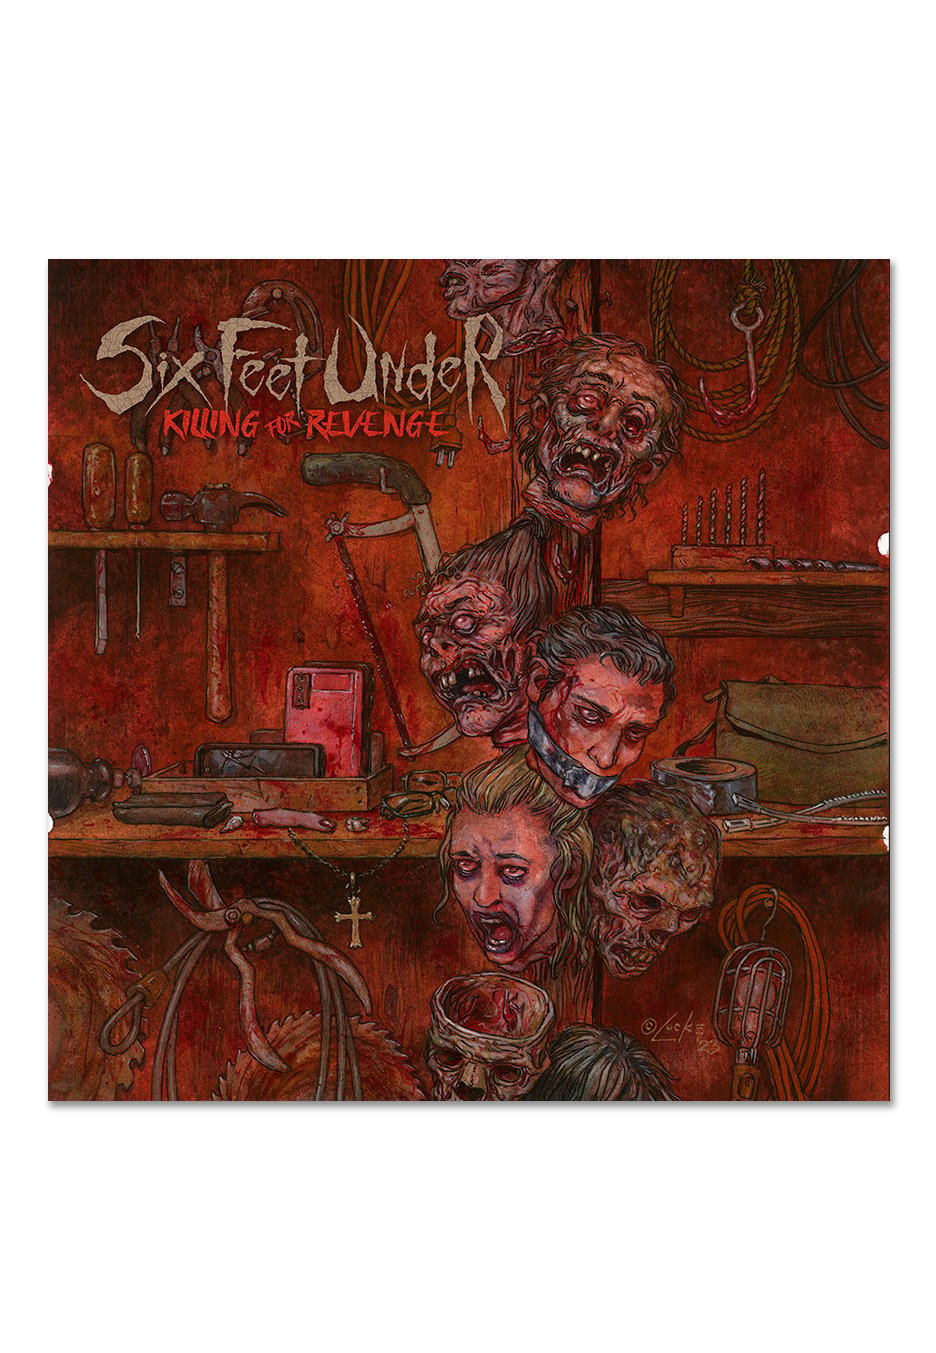 Six Feet Under - Killing For Revenge Ltd. Khaki Brown - Marbled Vinyl